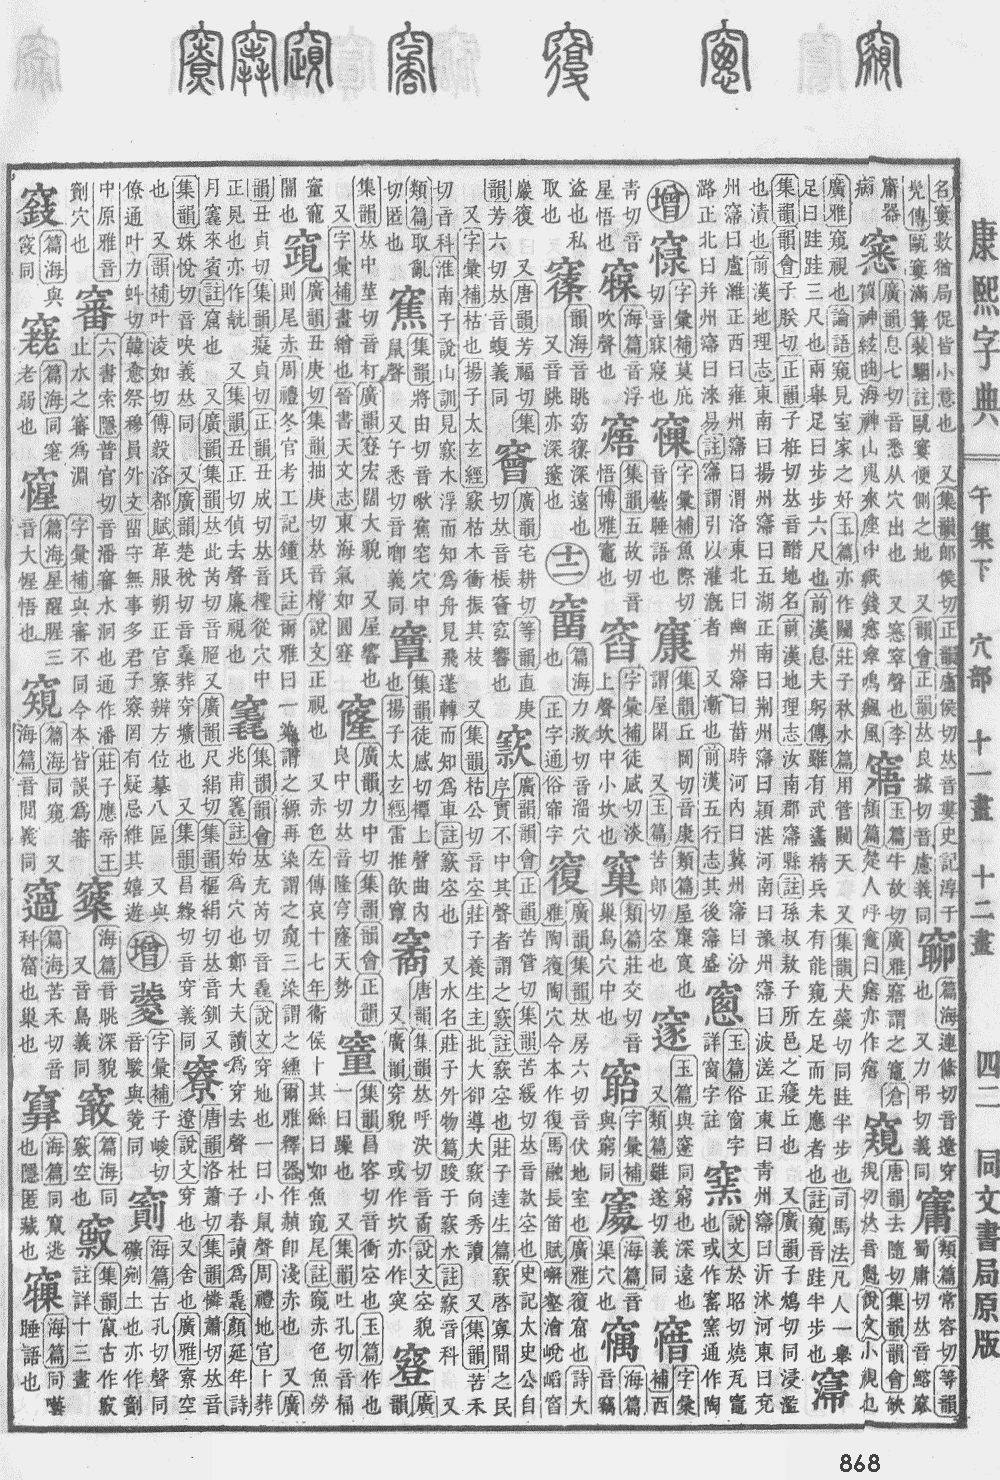 康熙字典第868页图片